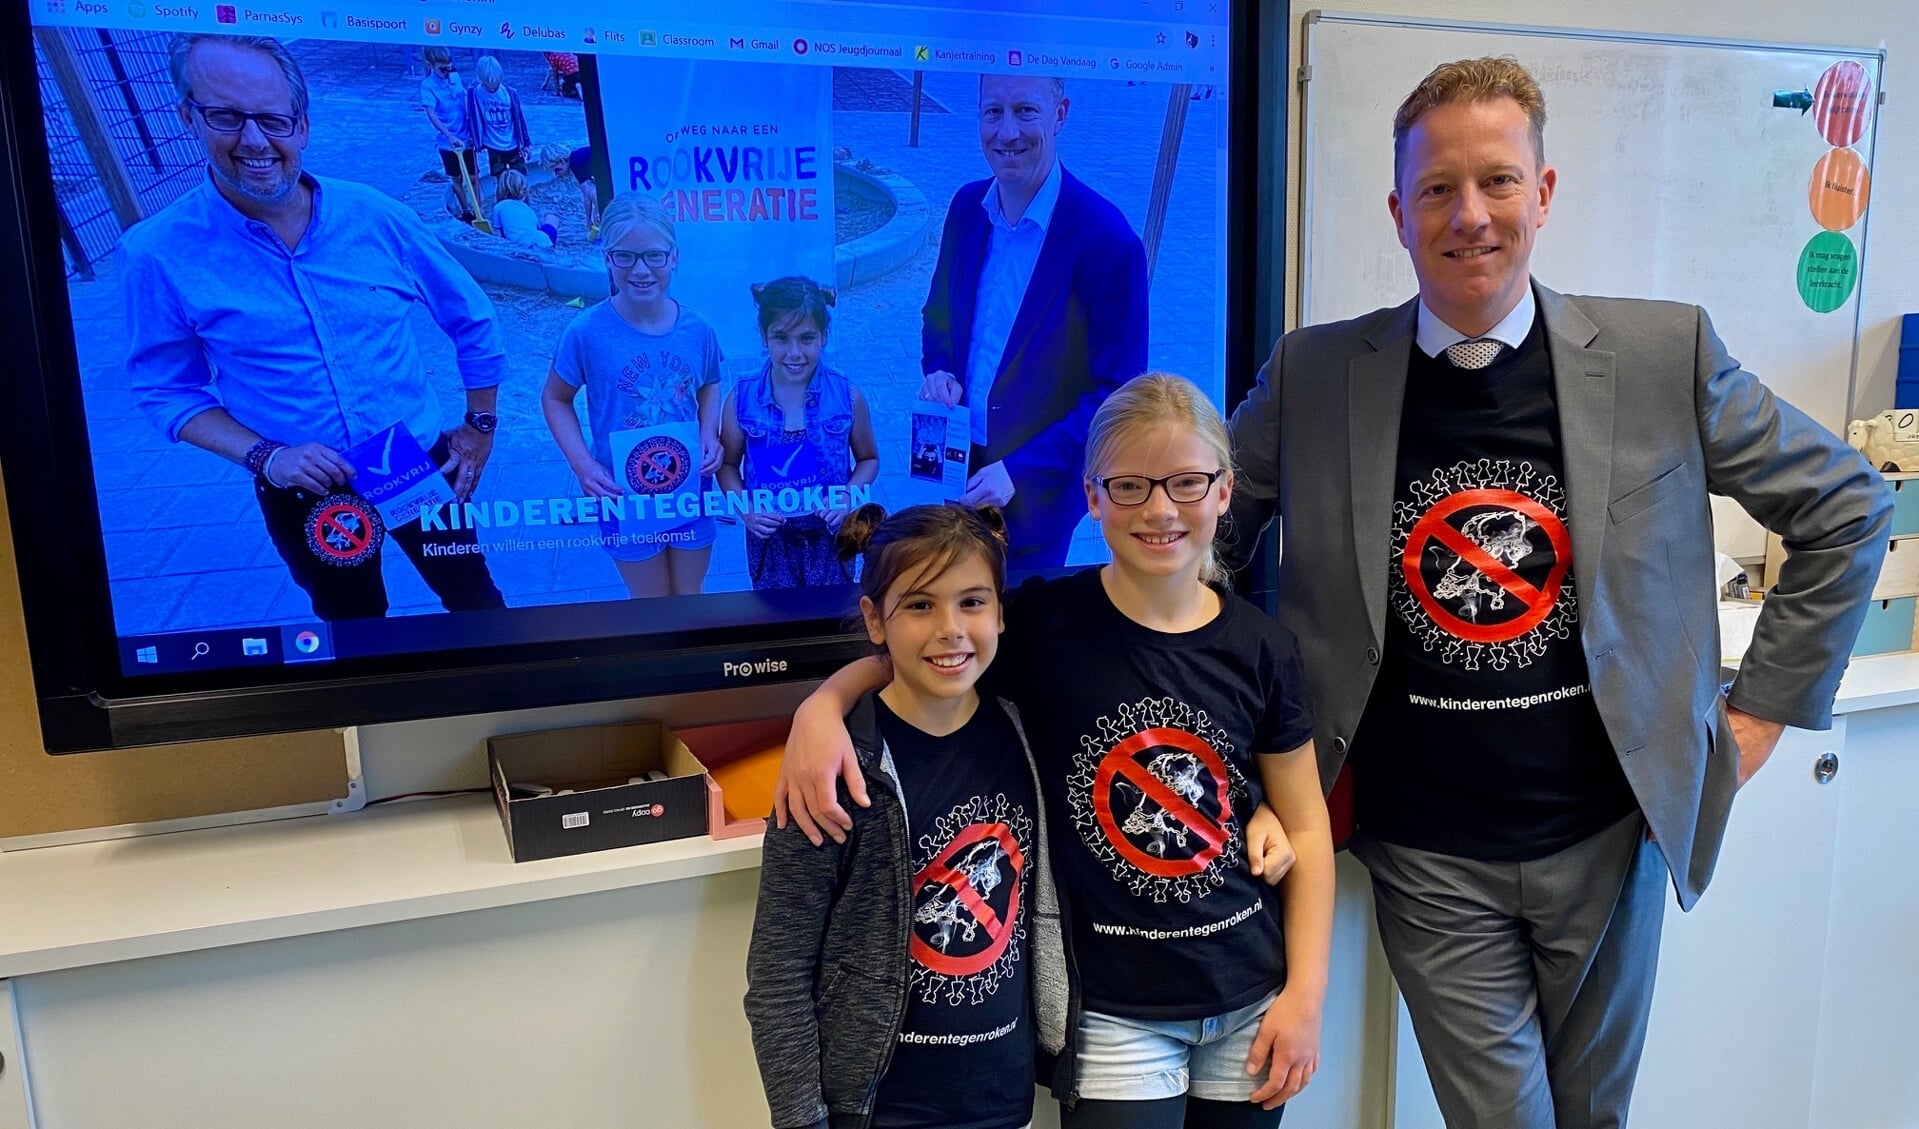 Ambassadeurs Rookvrije Generatie Saskia en Anna dragen, samen met wethouder Jeugd Frank Berkhout, het T-shirt dat ze zelf ontworpen hebben. 